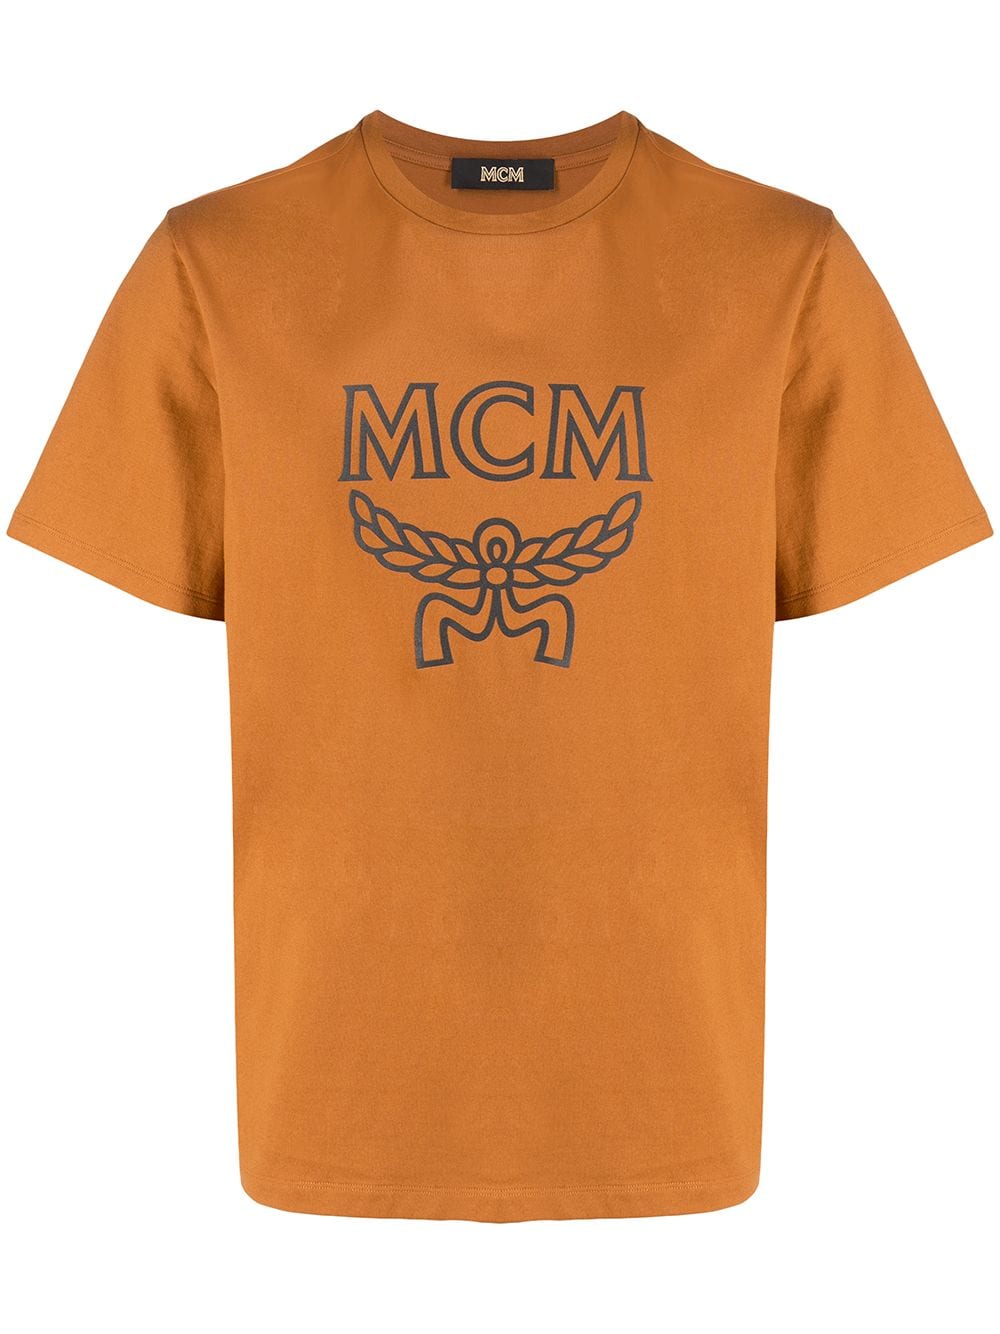 фото Mcm футболка с логотипом